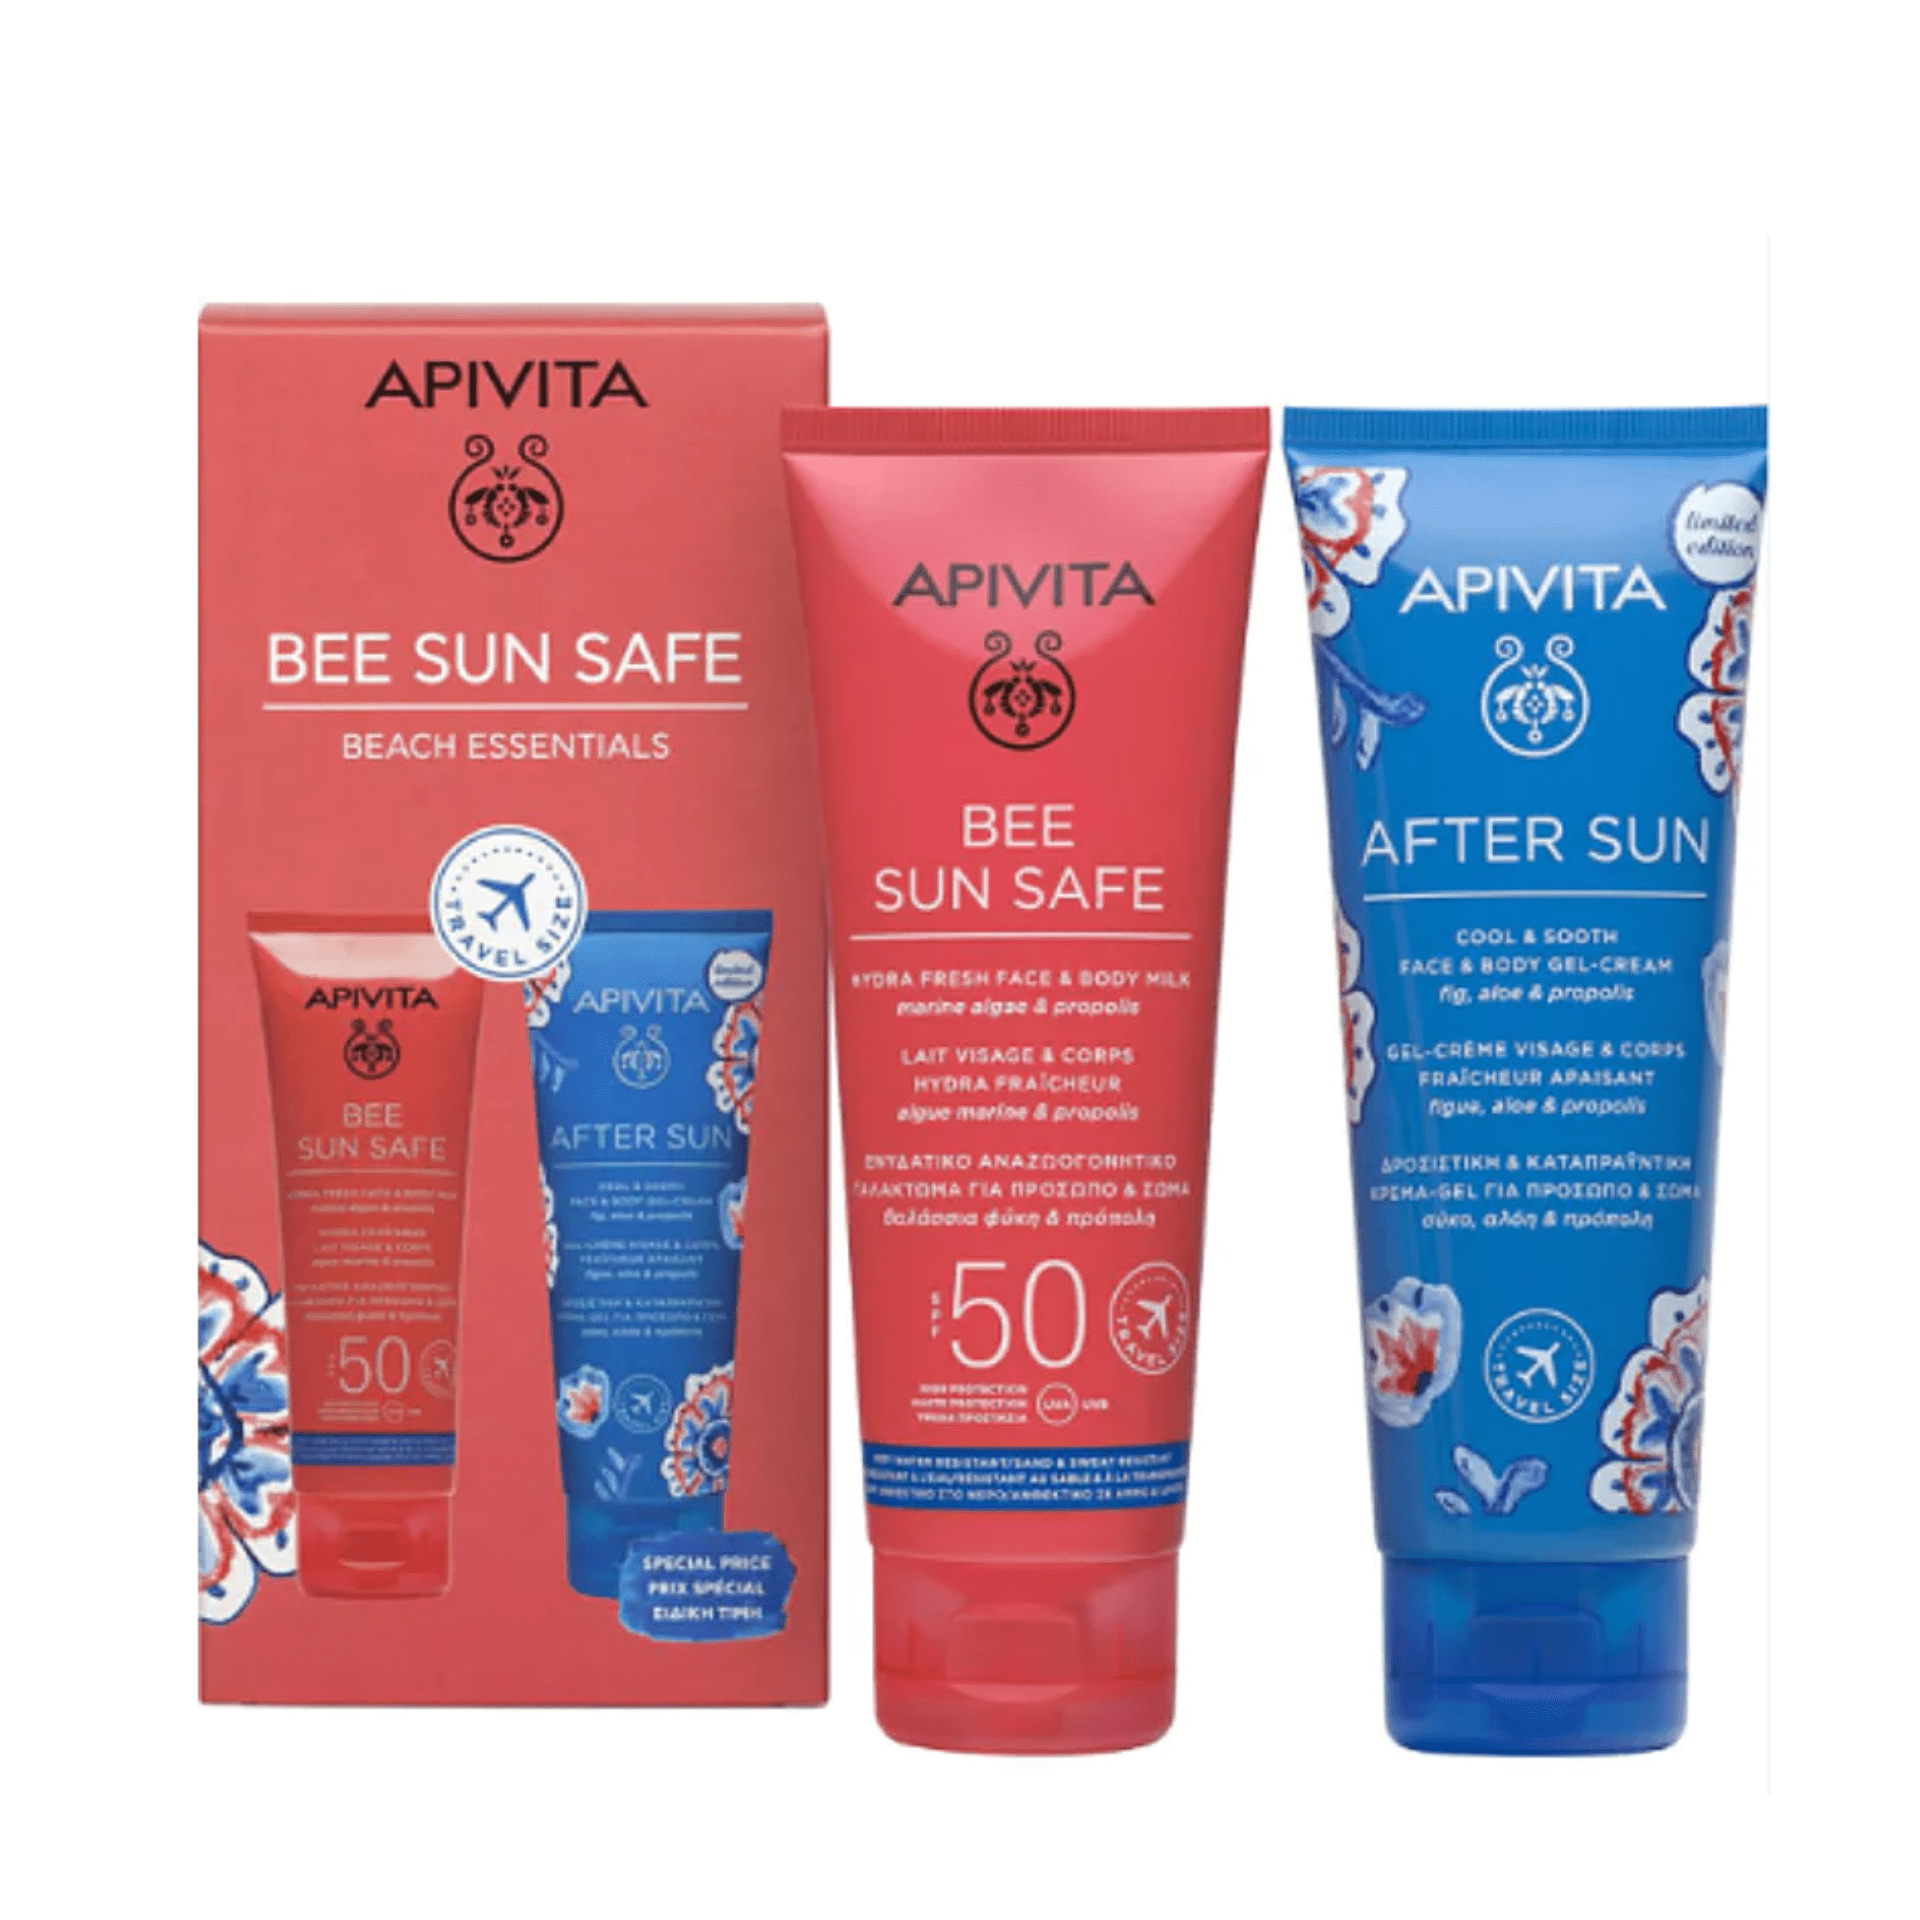 Apivita Bee Sun Safe Beach Essentials 2 Prod.